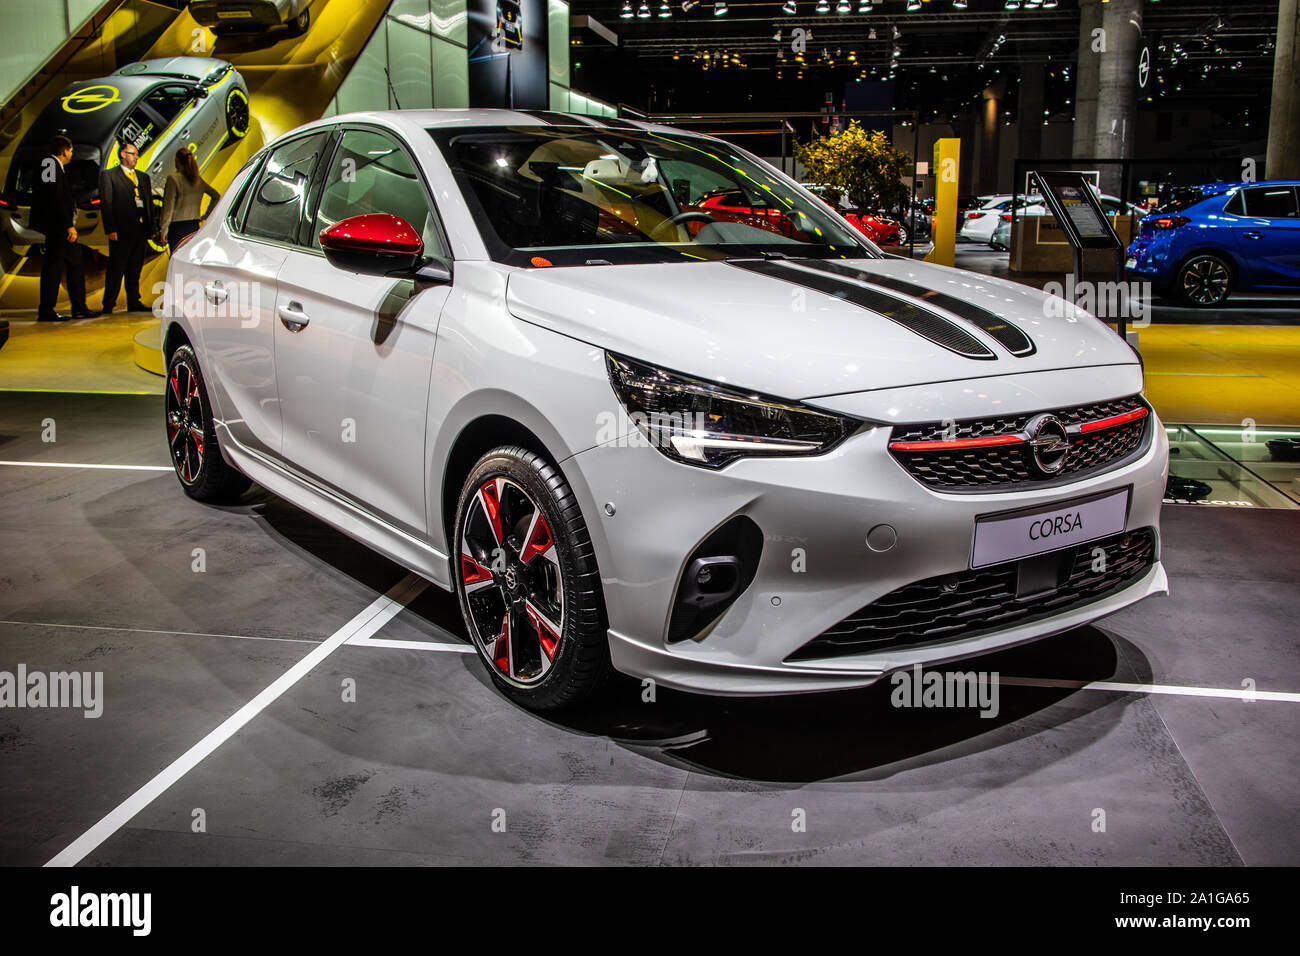 Opel corsa f immagini e fotografie stock ad alta risoluzione - Alamy